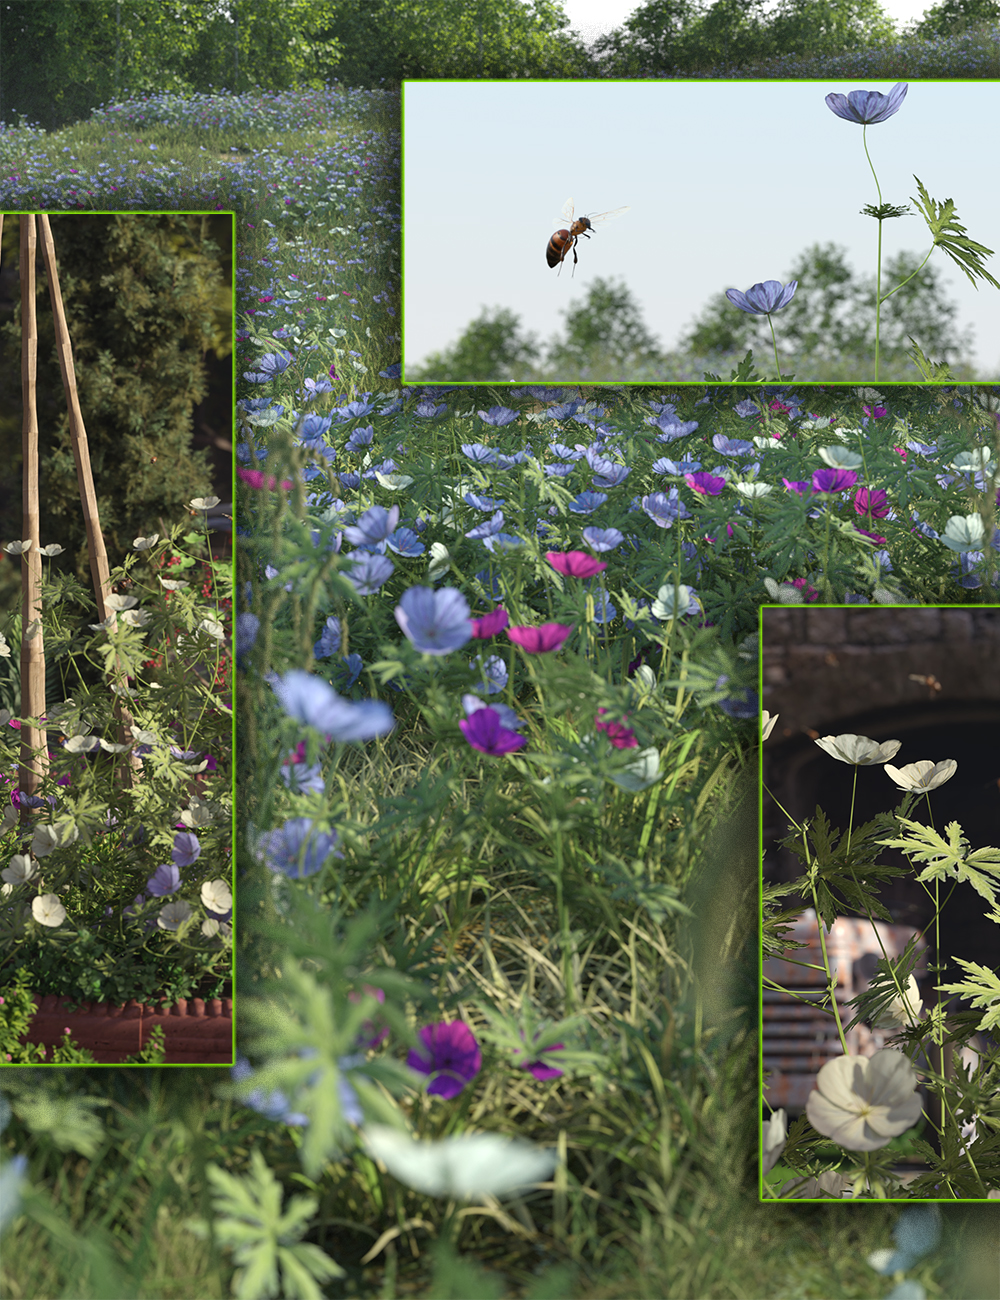 Meadow Flowers - Meadow Cranesbill by: MartinJFrost, 3D Models by Daz 3D